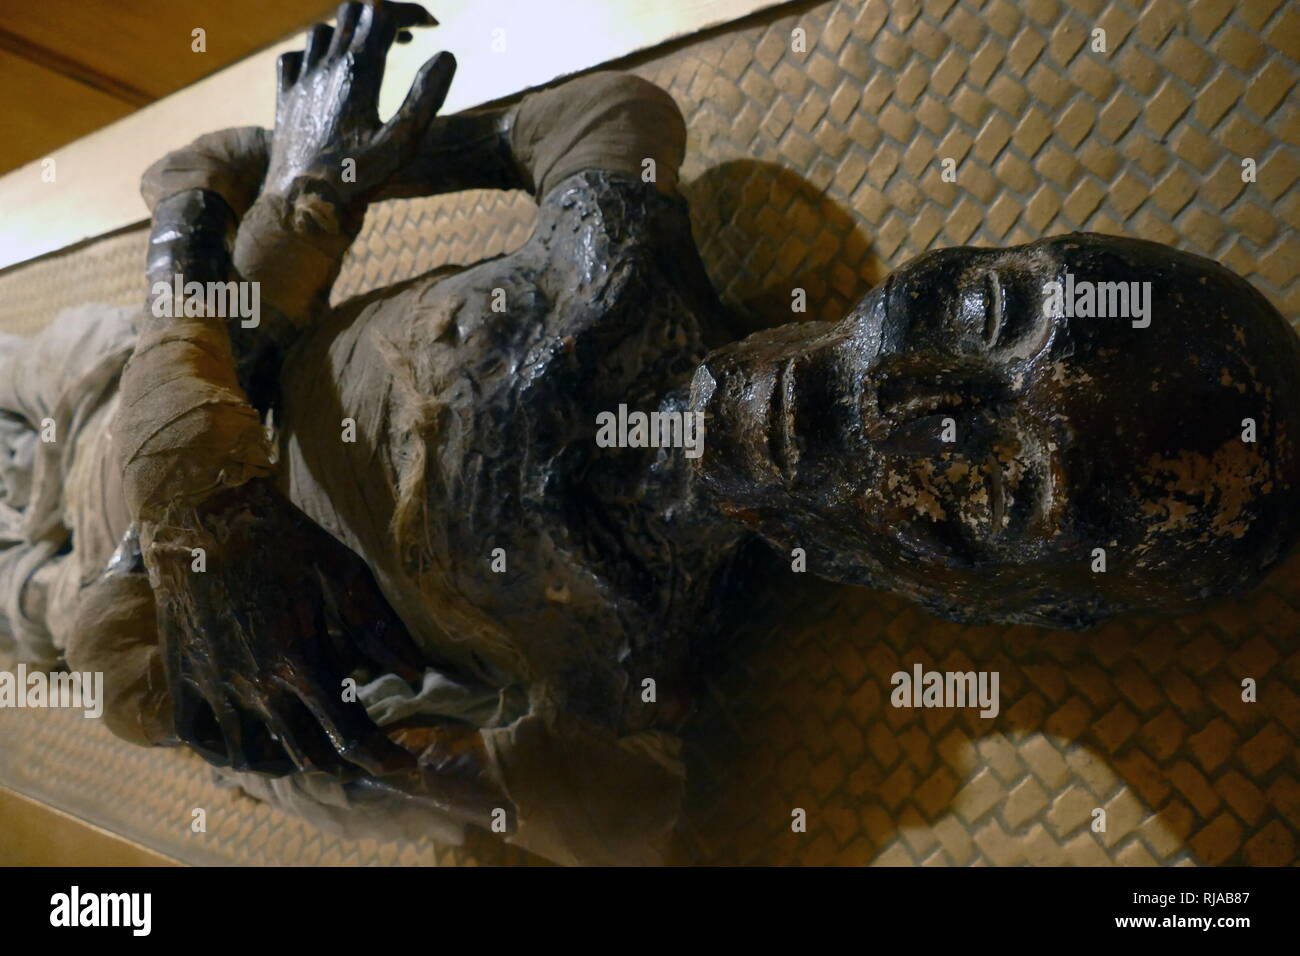 La replica della mummia del re Tutankhamon, che governò Antico Egitto da circa 1355-1346 A.C. faraone durante la XVIII Dinastia del Nuovo Regno. Il 28 ottobre 1925, Inglese egittologo Howard Carter e il suo team rimosso il coperchio sulla terza e ultima bara di camera di sepoltura nella tomba KV62, rivelando la Mummia di Tutankhamon. La sua camera di sepoltura è stata trovata nella Valle dei Re nella necropoli tebana nel 1922 Foto Stock